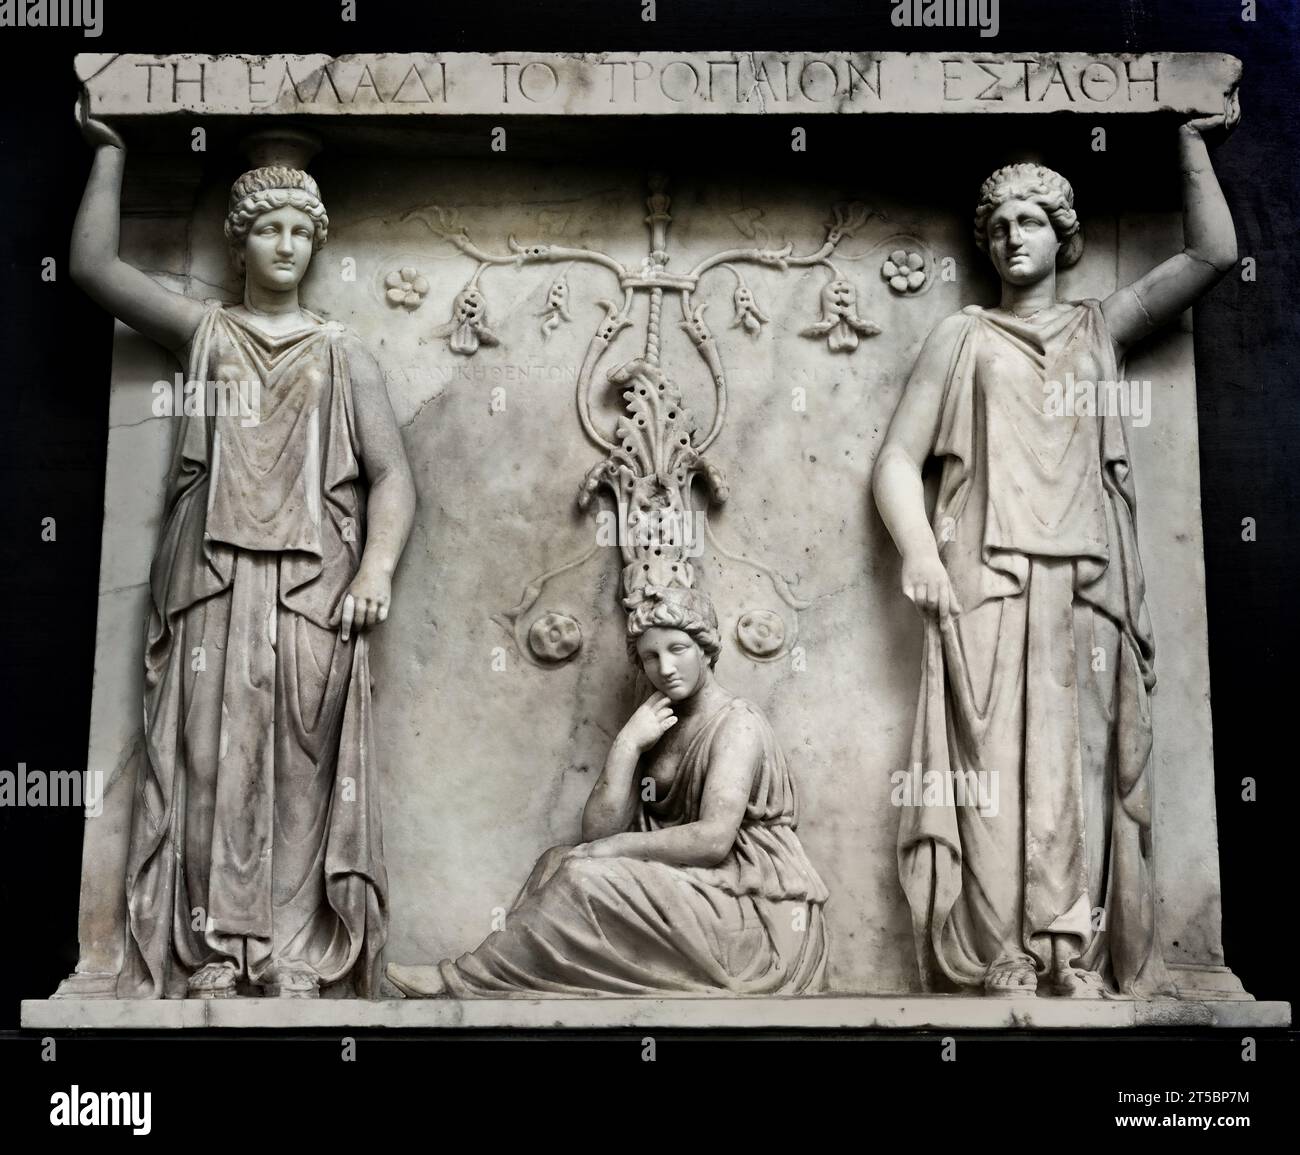 Province conquise entre deux Carytides relief du 1e siècle après JC Musée archéologique national de Naples Italie. Banque D'Images